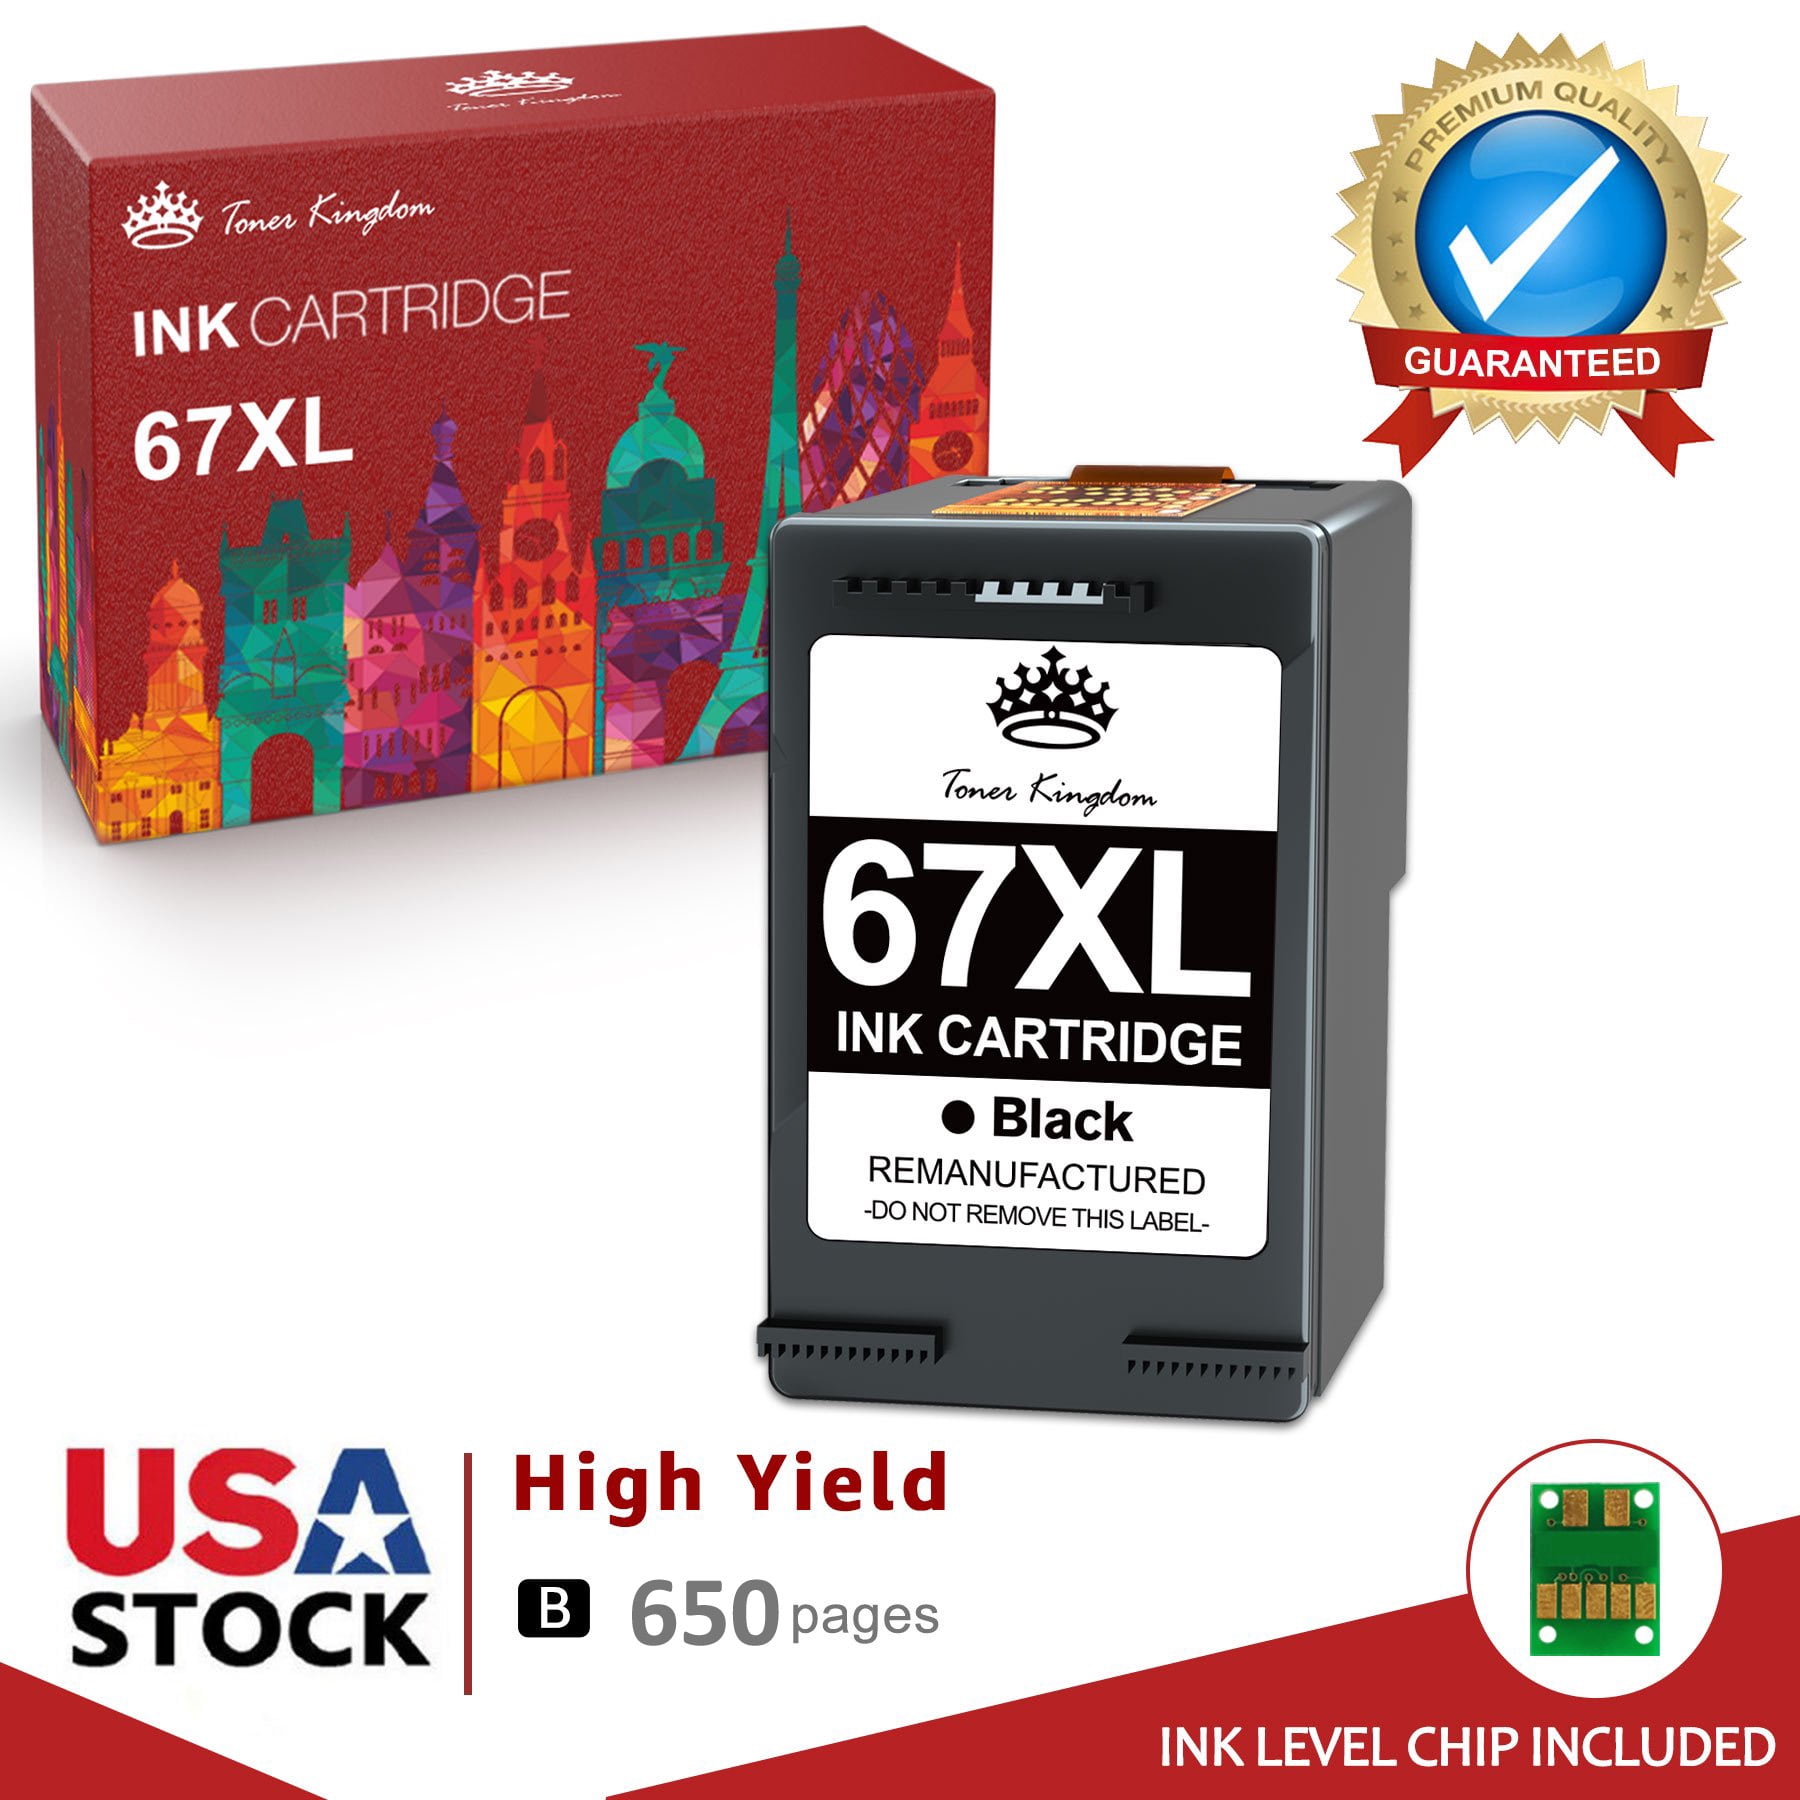 Replace Ink Cartridges  HP ENVY 6000, ENVY 6055, Pro 6400